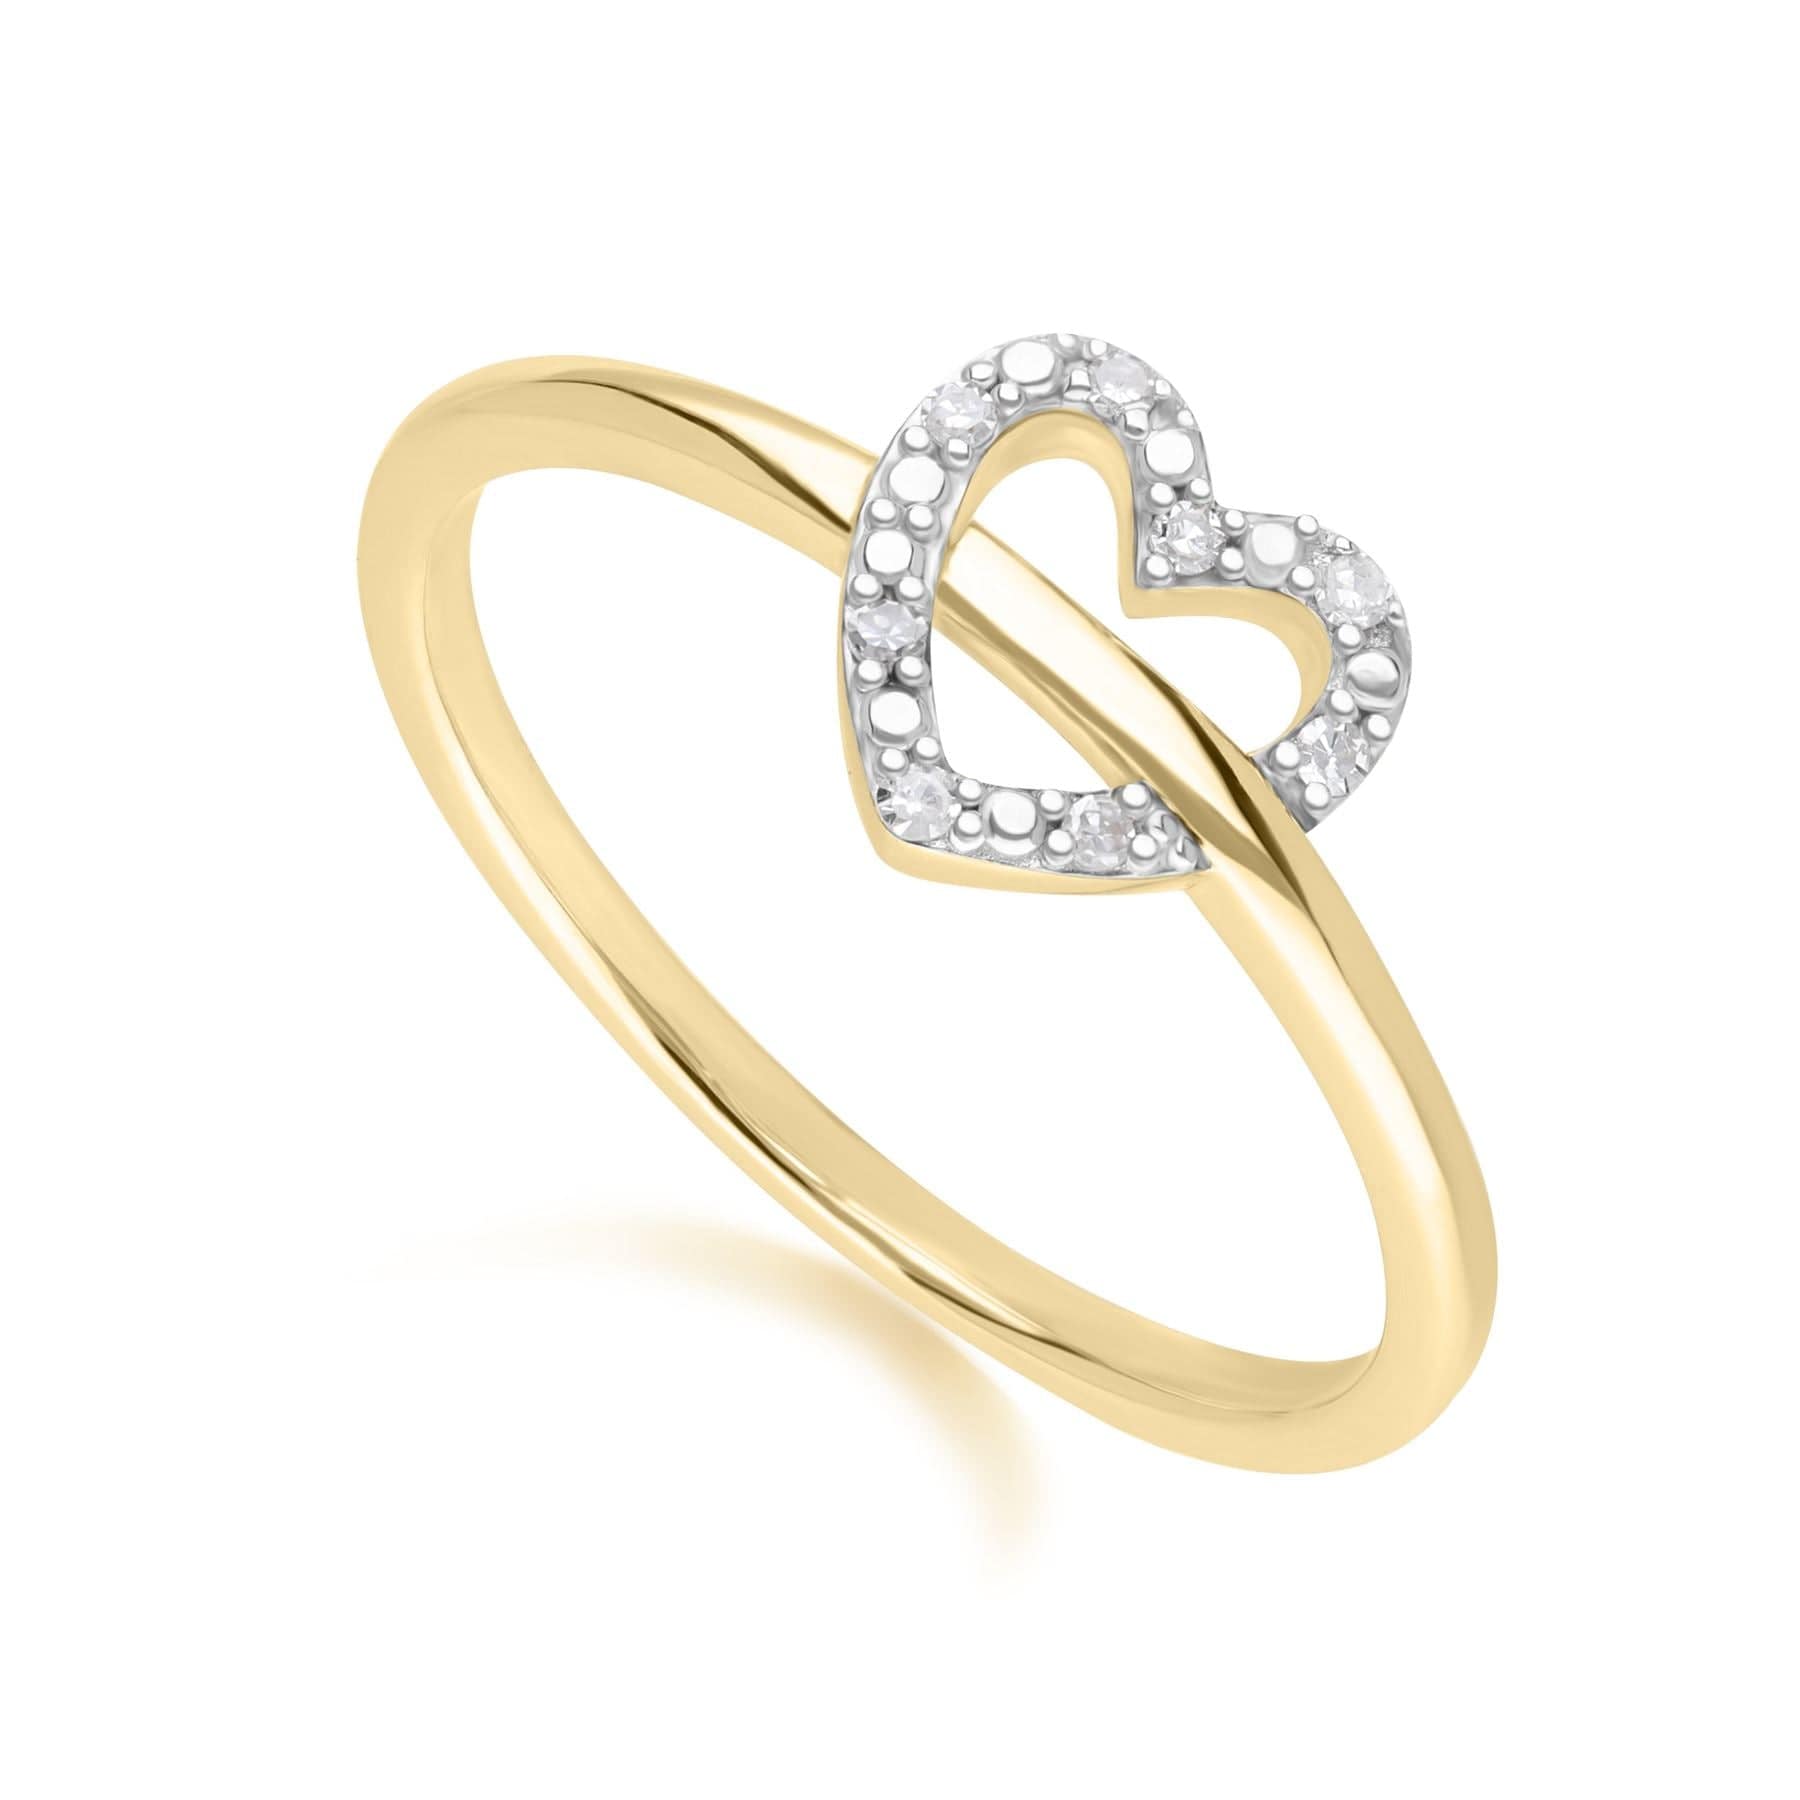 Diamond Love Heart Ring in 9ct Yellow Gold - Gemondo